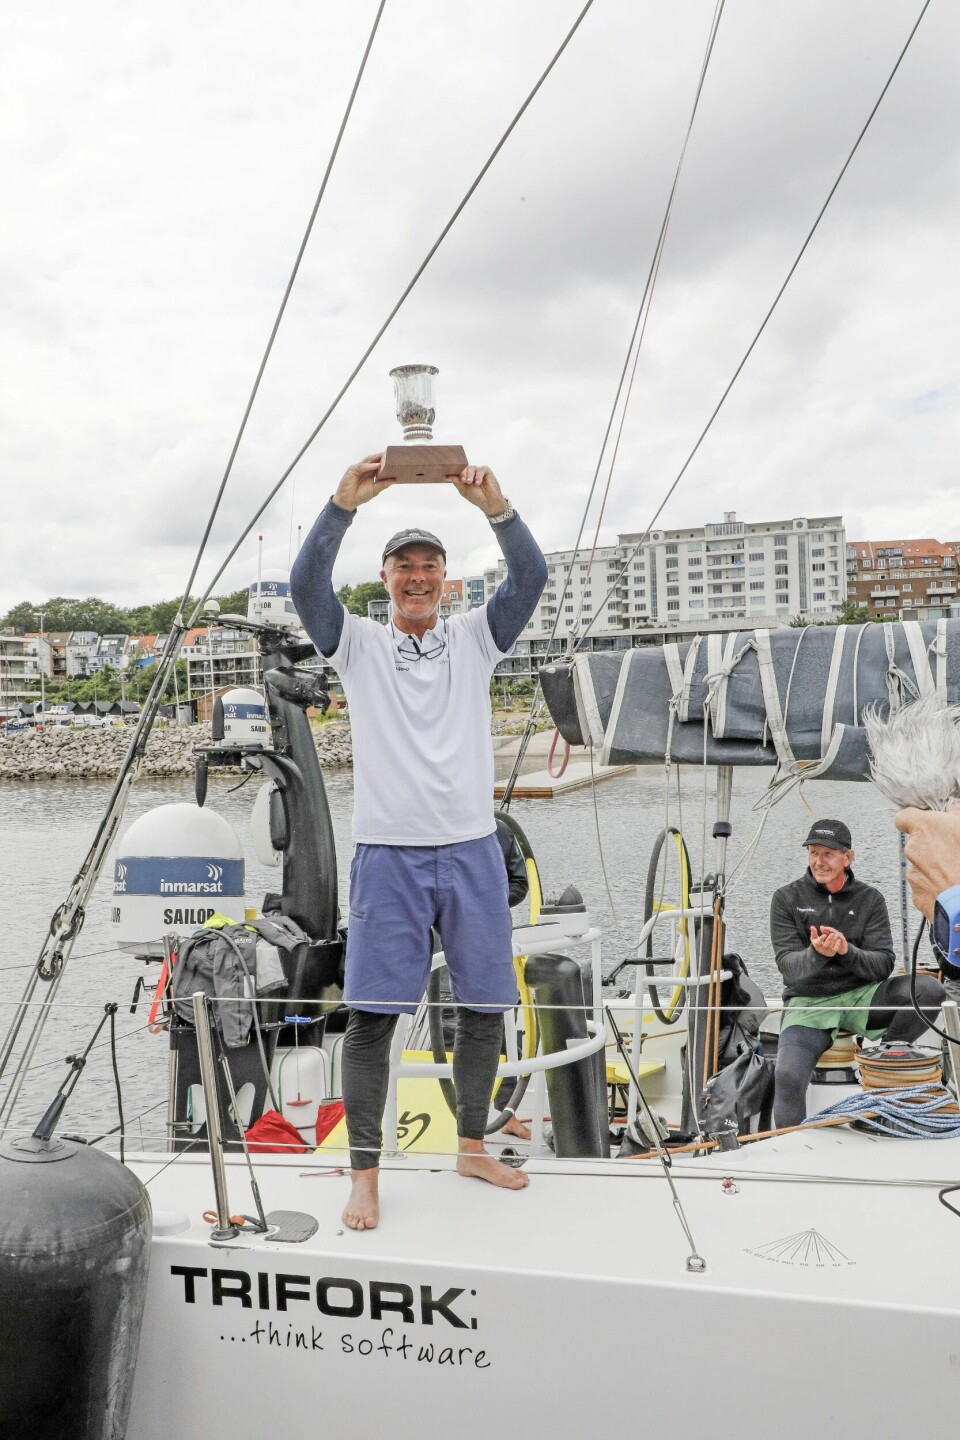 Kaptajnen Bouwe Bekking, 57, med trofæet. Han har sejlet jorden rundt otte gange og er en af de største stjerner inden for Ocean kapsejlads. Bekking er hollænder, men har boet i Danmark med sin hustru, Rikke, i 25 år (Foto: Niels Henrik Dam)